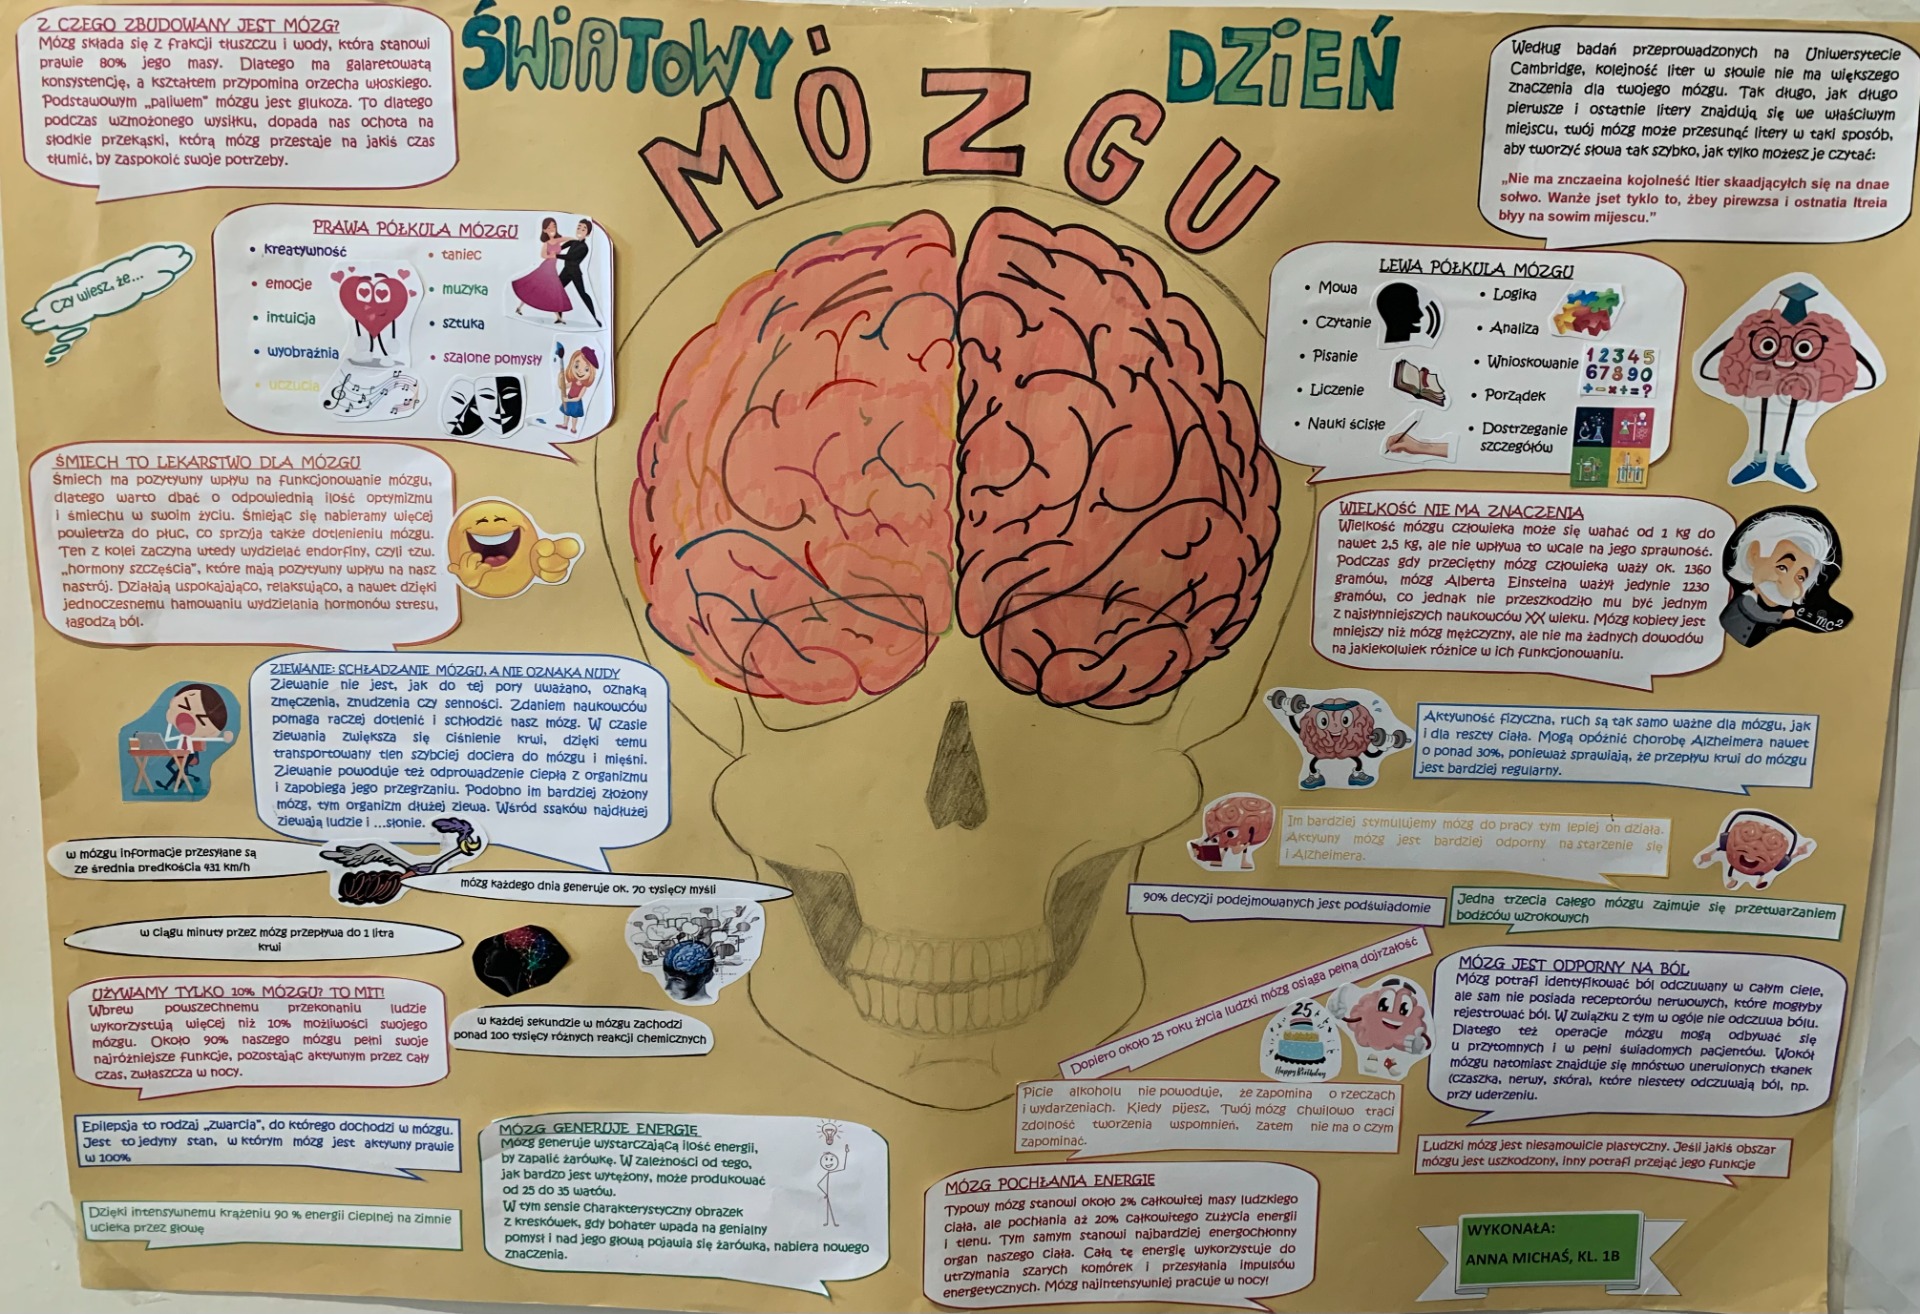 Plakat informujący o możliwościach mózgu